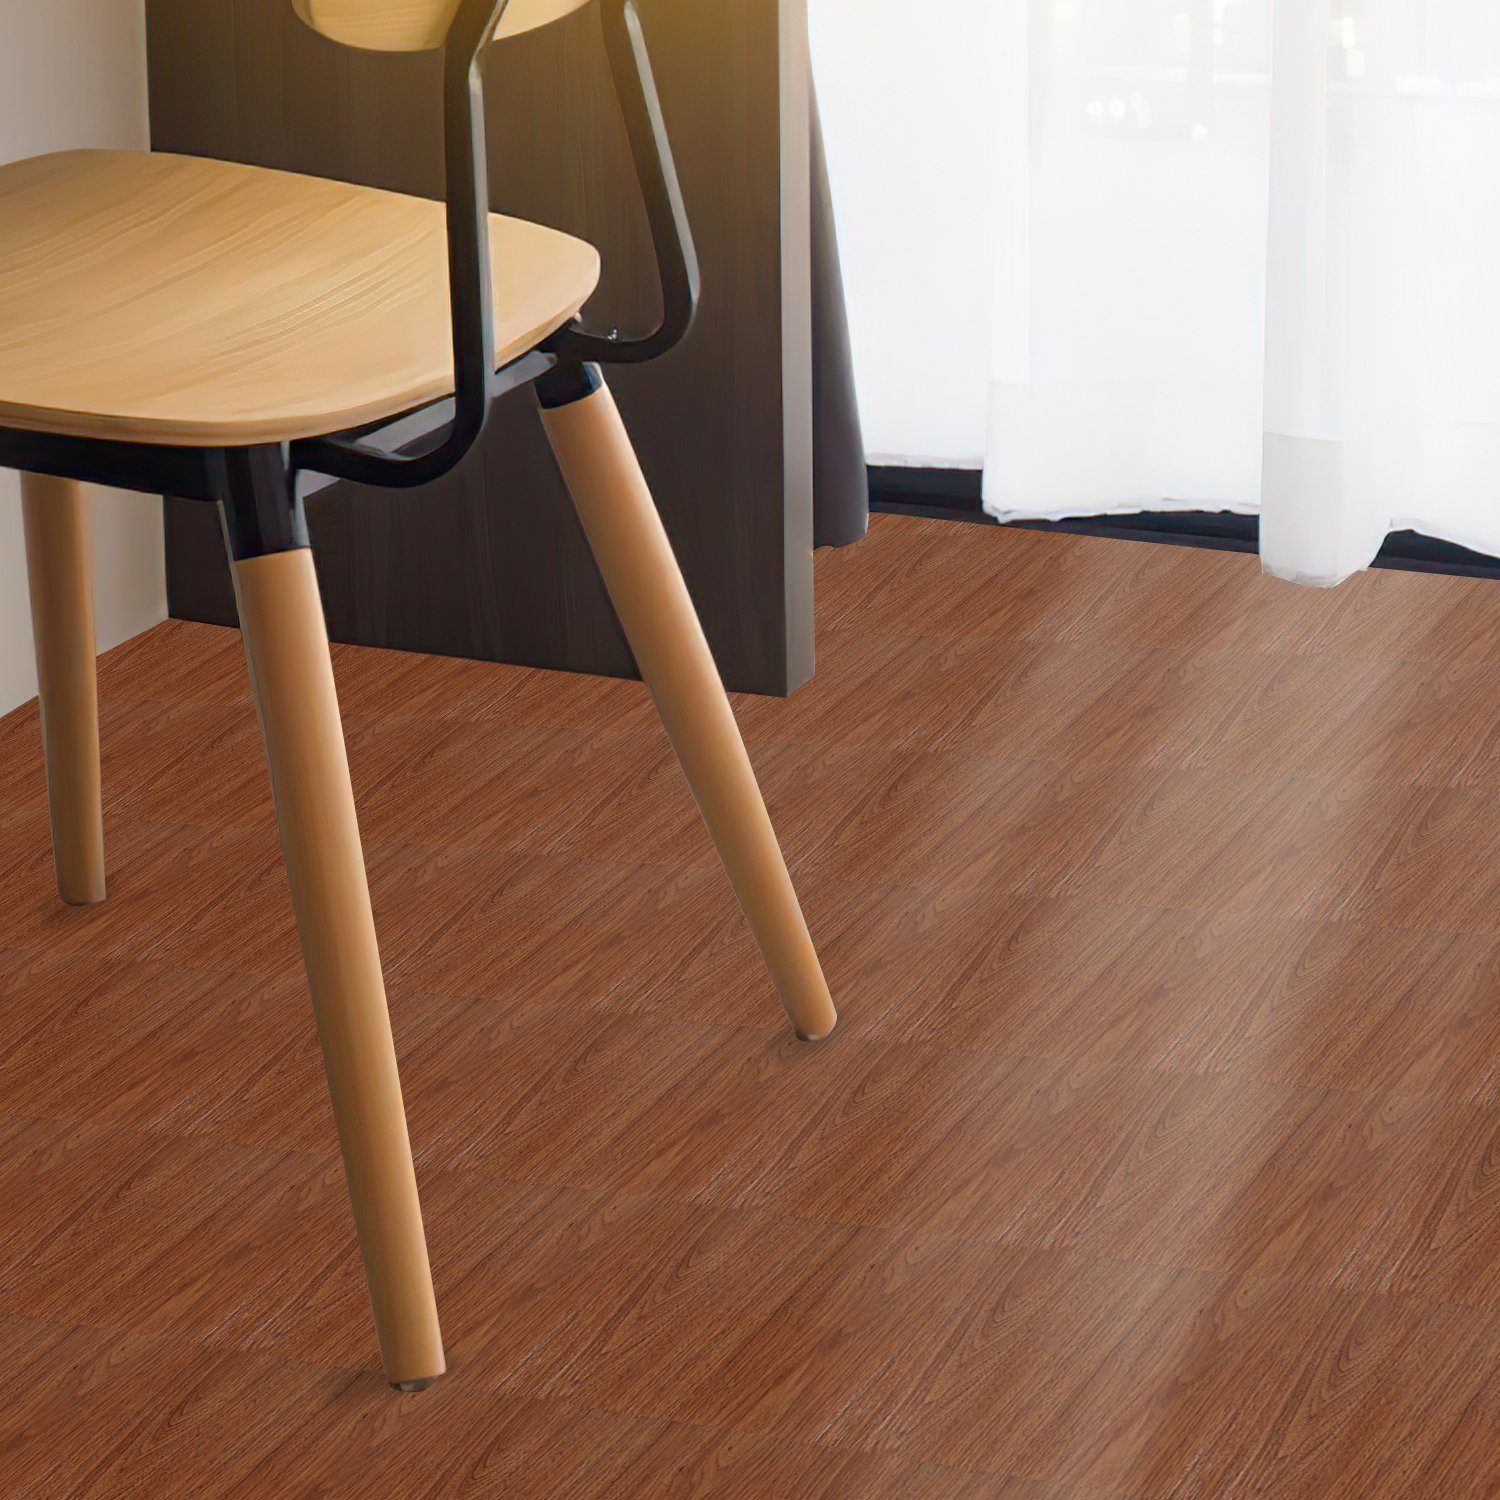 Fußbodenheizung Bodenbelag Vinylboden geeignet,schallhemmend Gimisgu Selbstklebend, Vinylboden Laminat Vinyl Holzfarbe Dekor-Dielen